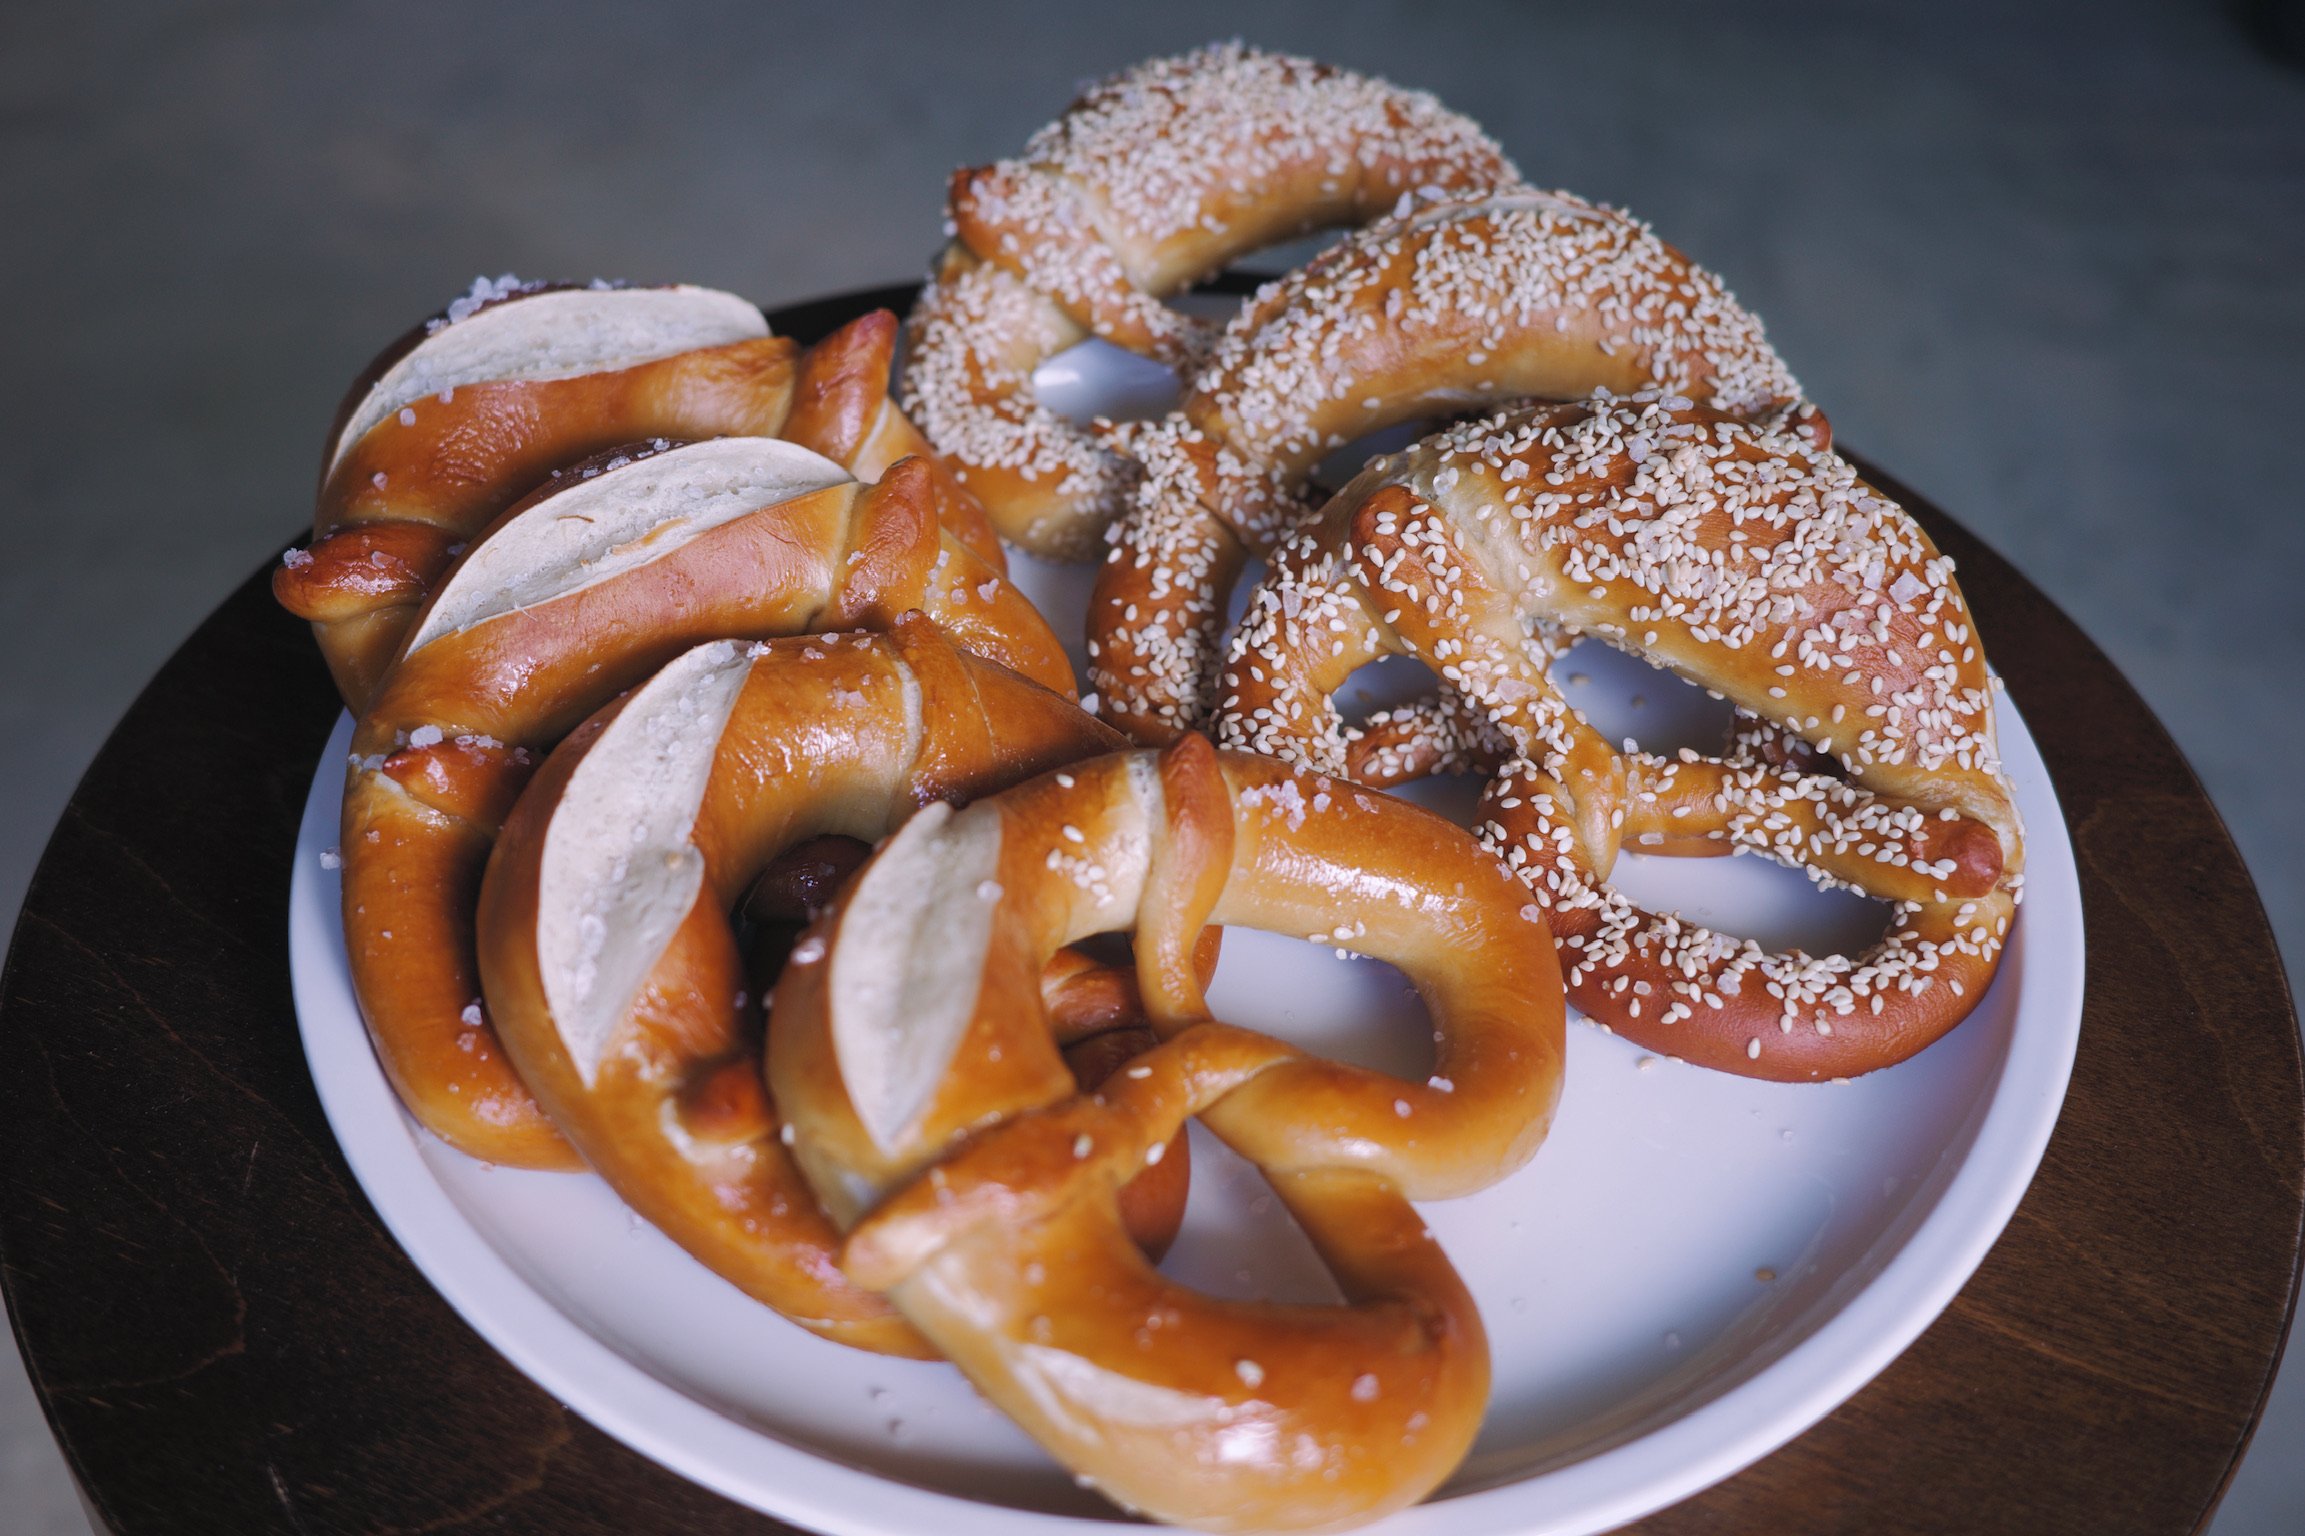 Plate of pretzels, four original, three sesame.